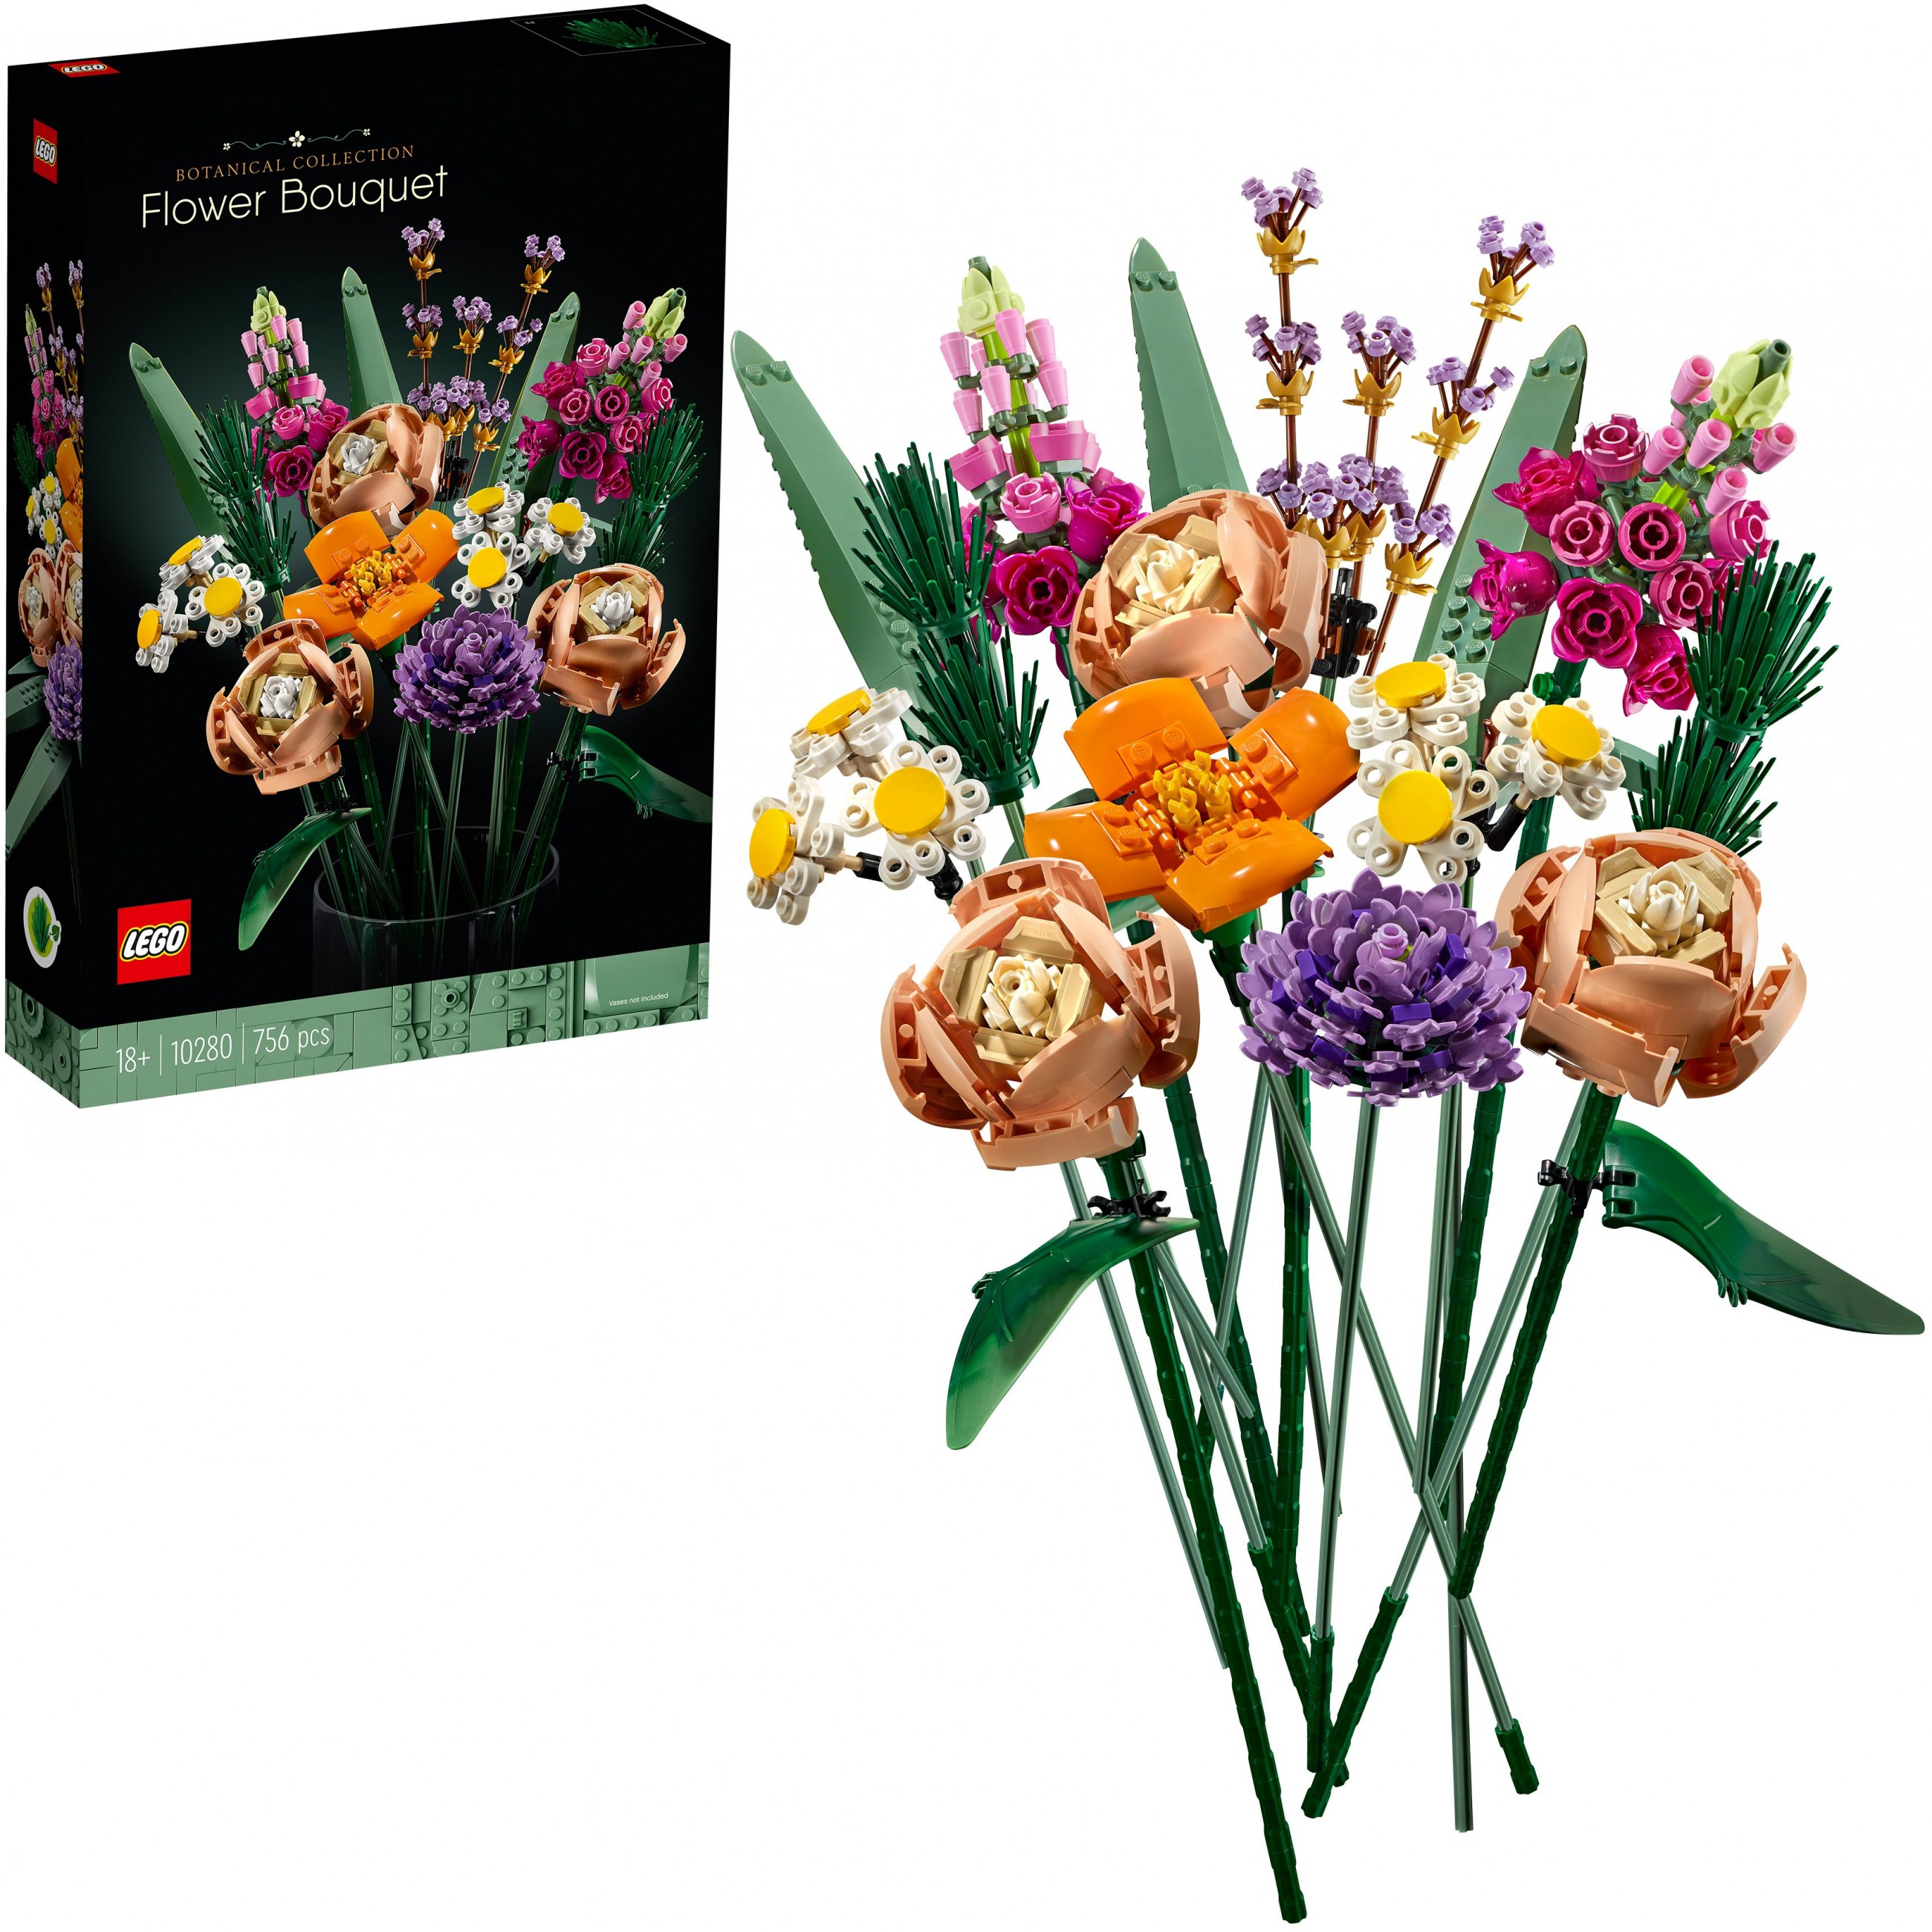 LEGO 10280, Spielzeug, LEGO ICONS Flower Bouquet 10280 10280 (BILD2)